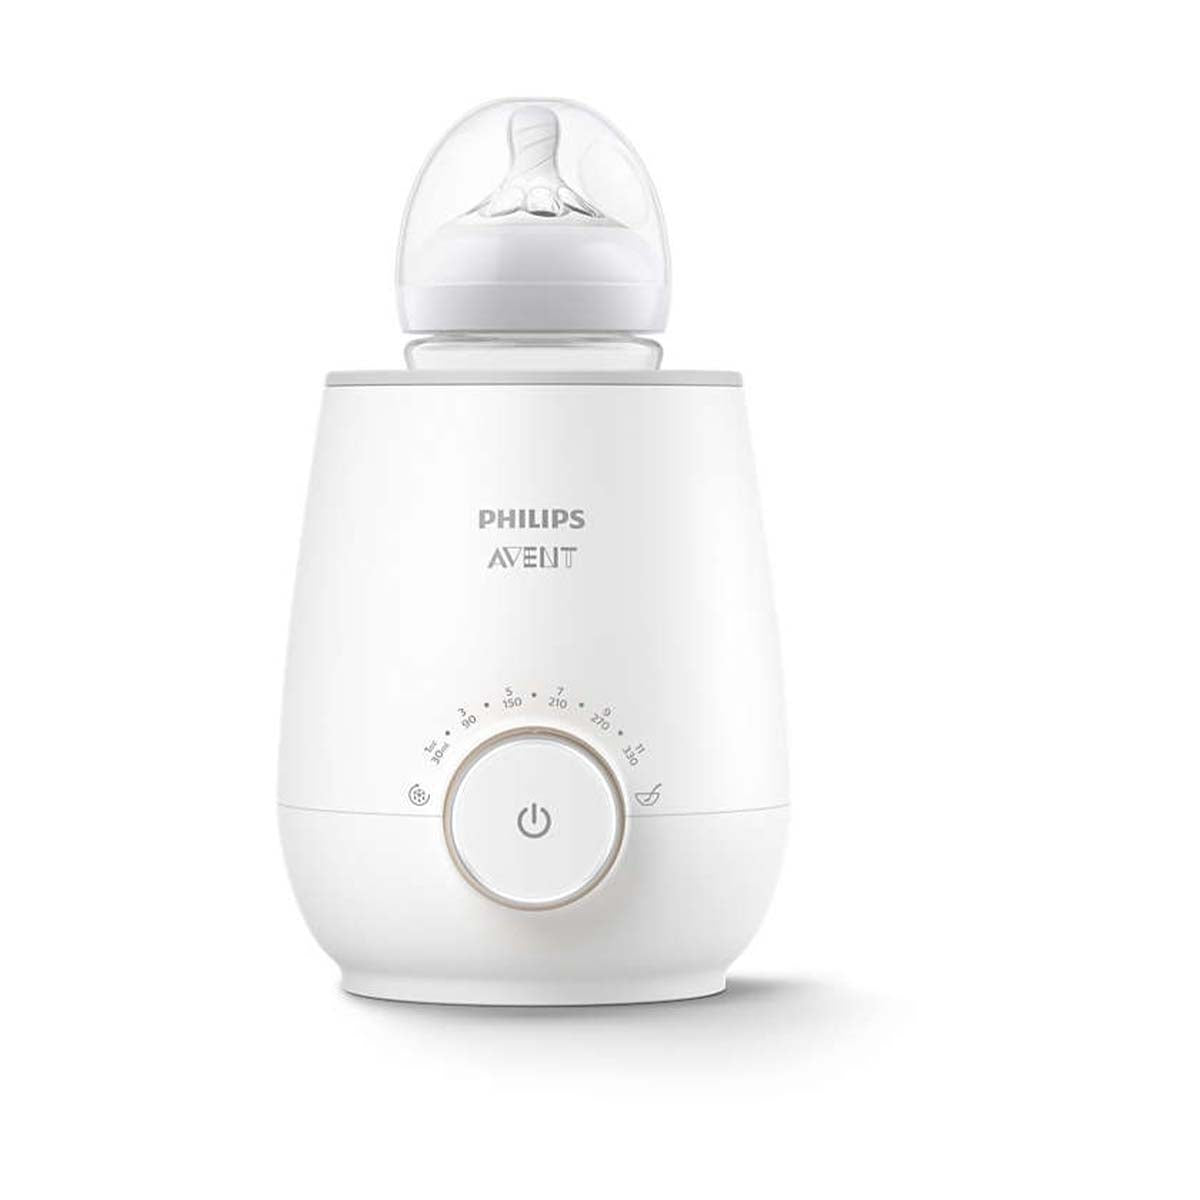 De de Philips Avent flesverwarmer fast is een flessenwarmer, waarmee je snel een voeding voor jouw kleintje opwarmt. Een ideaal hulpmiddel, bijvoorbeeld als je 's nachts snel een voeding klaar wil maken voor je baby. VanZus